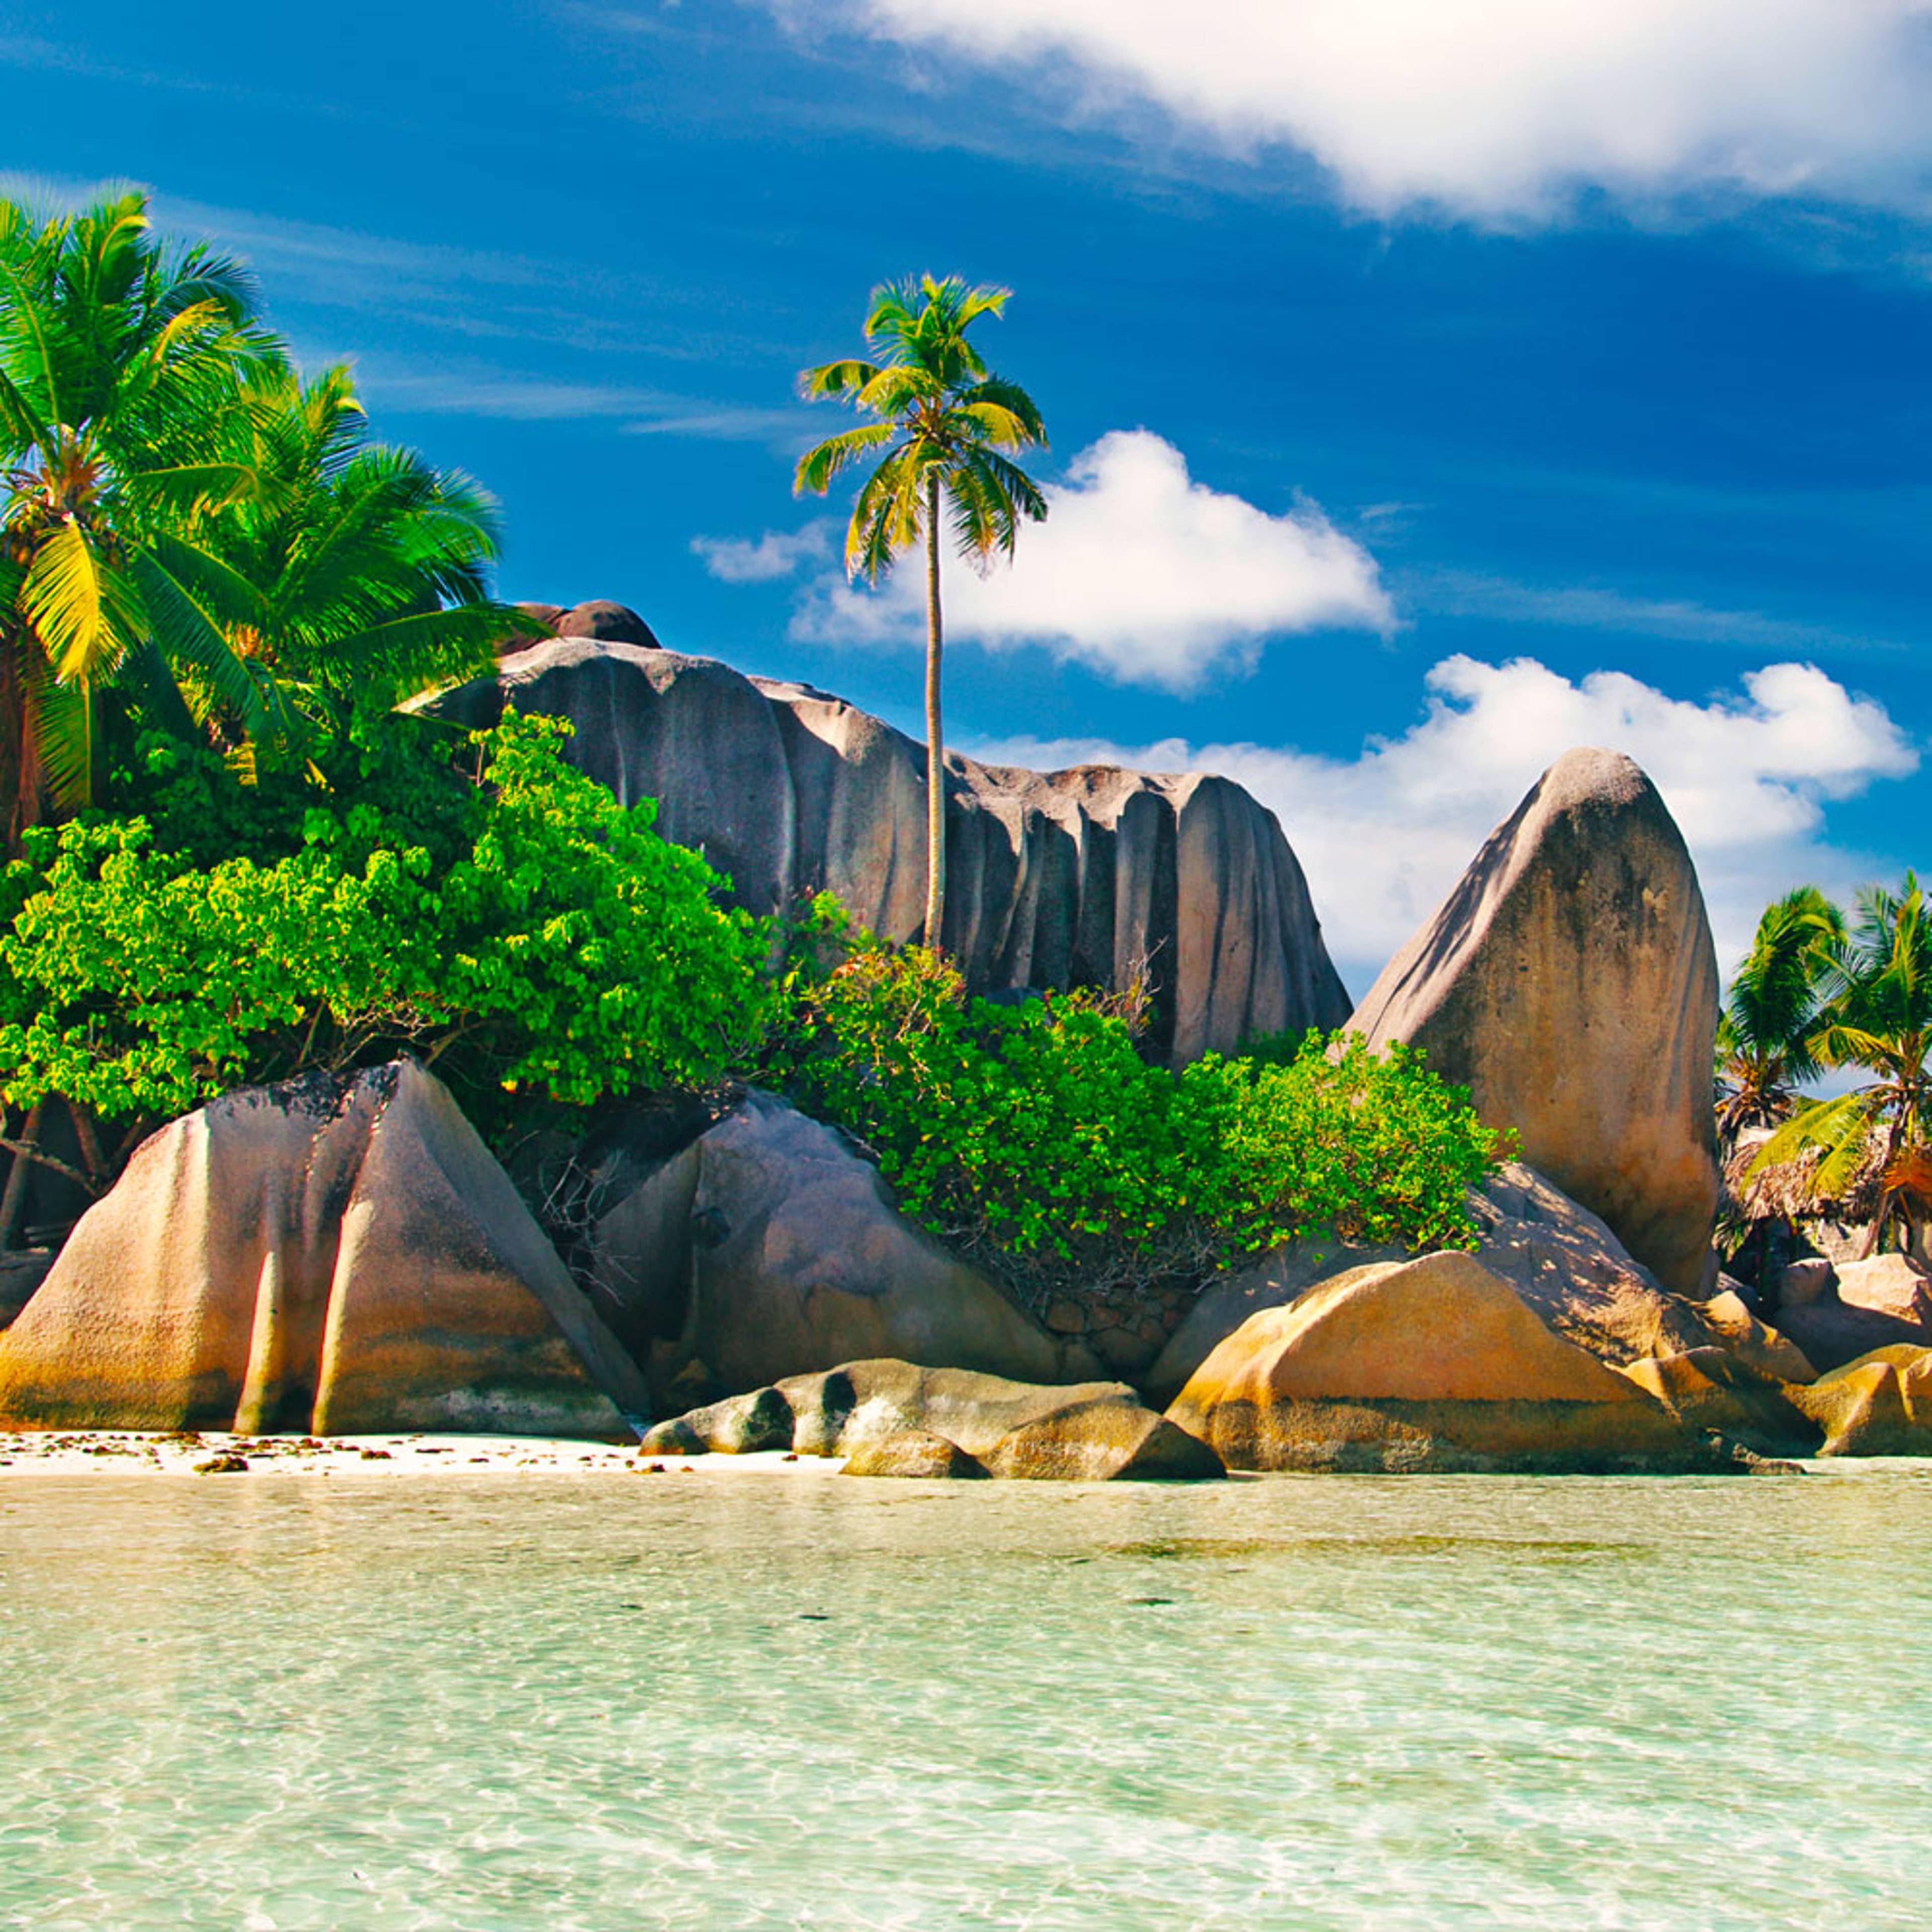 Découvrez les plus belles plages lors de votre voyage aux Seychelles 100% sur mesure